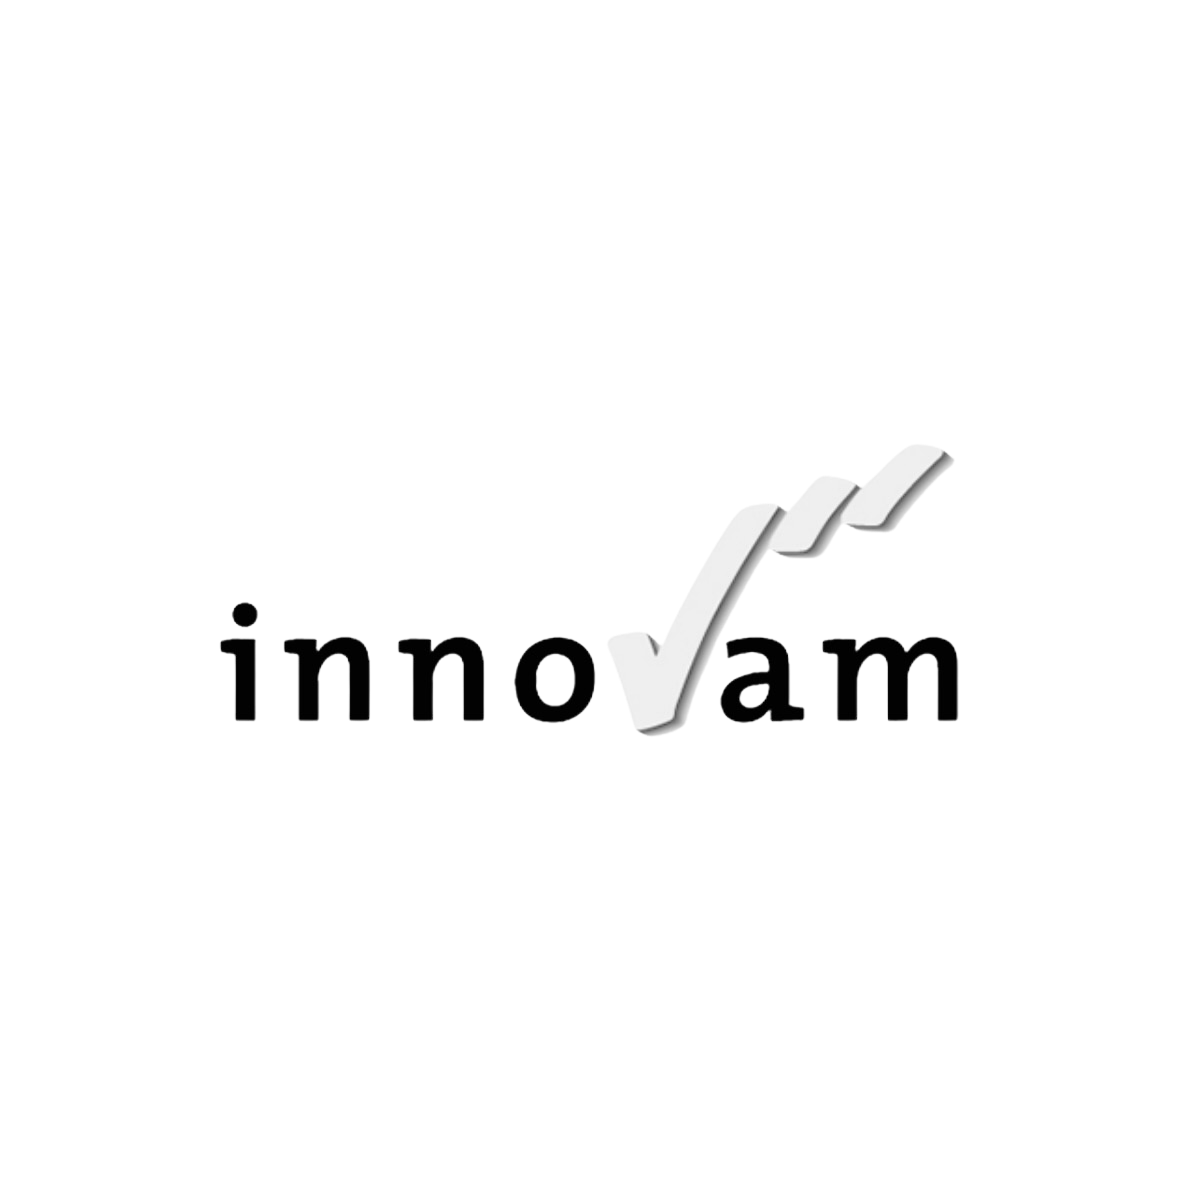 Logo van onderwijs - Innovam